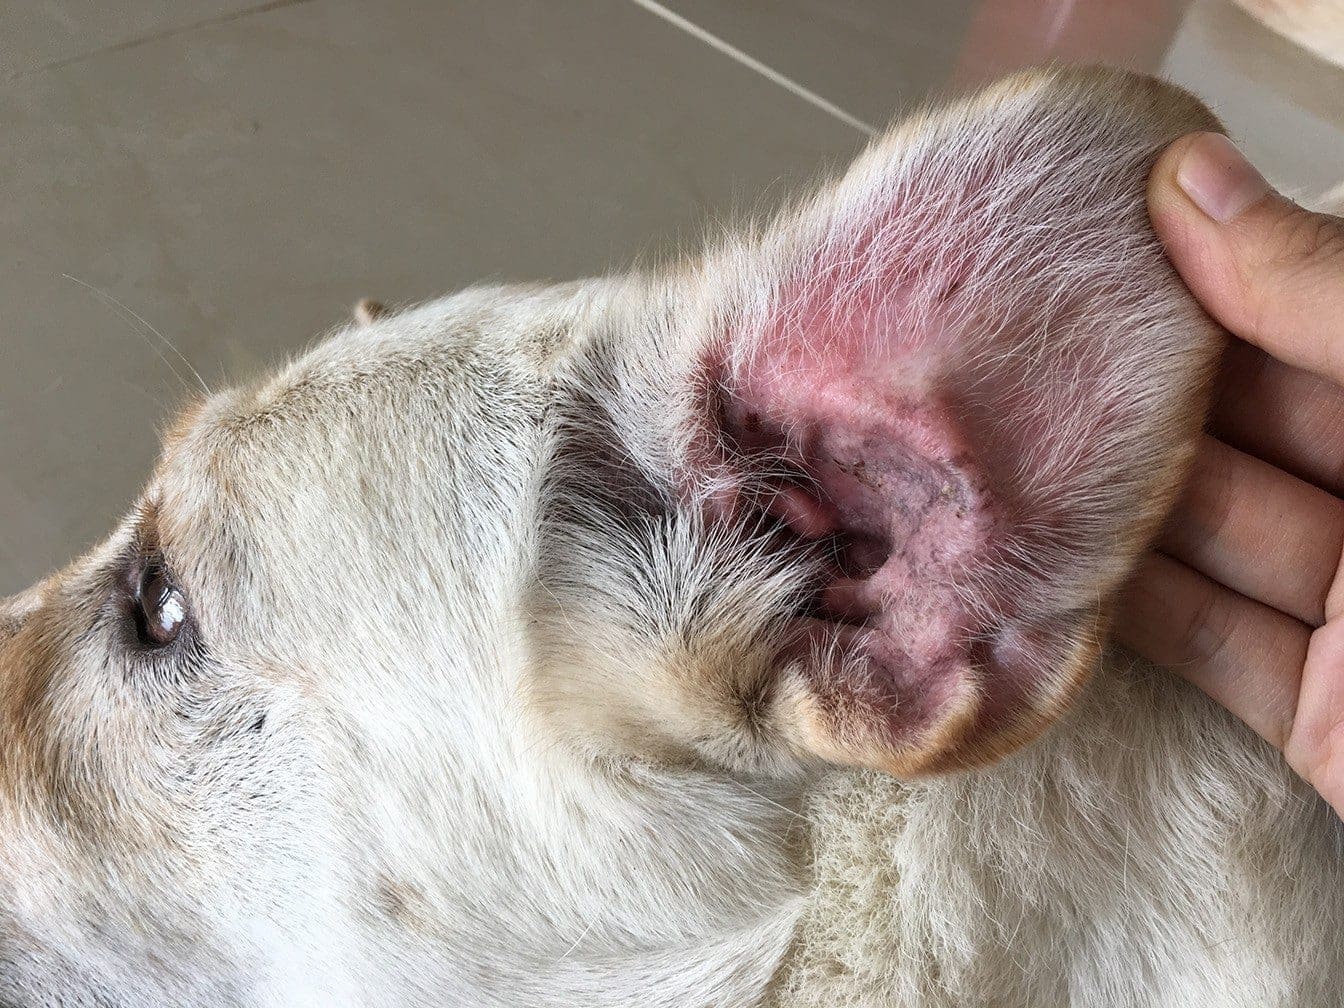 Infección de oído en los perros. Qué hacer para tratarla, cómo detectarla y prevenirla